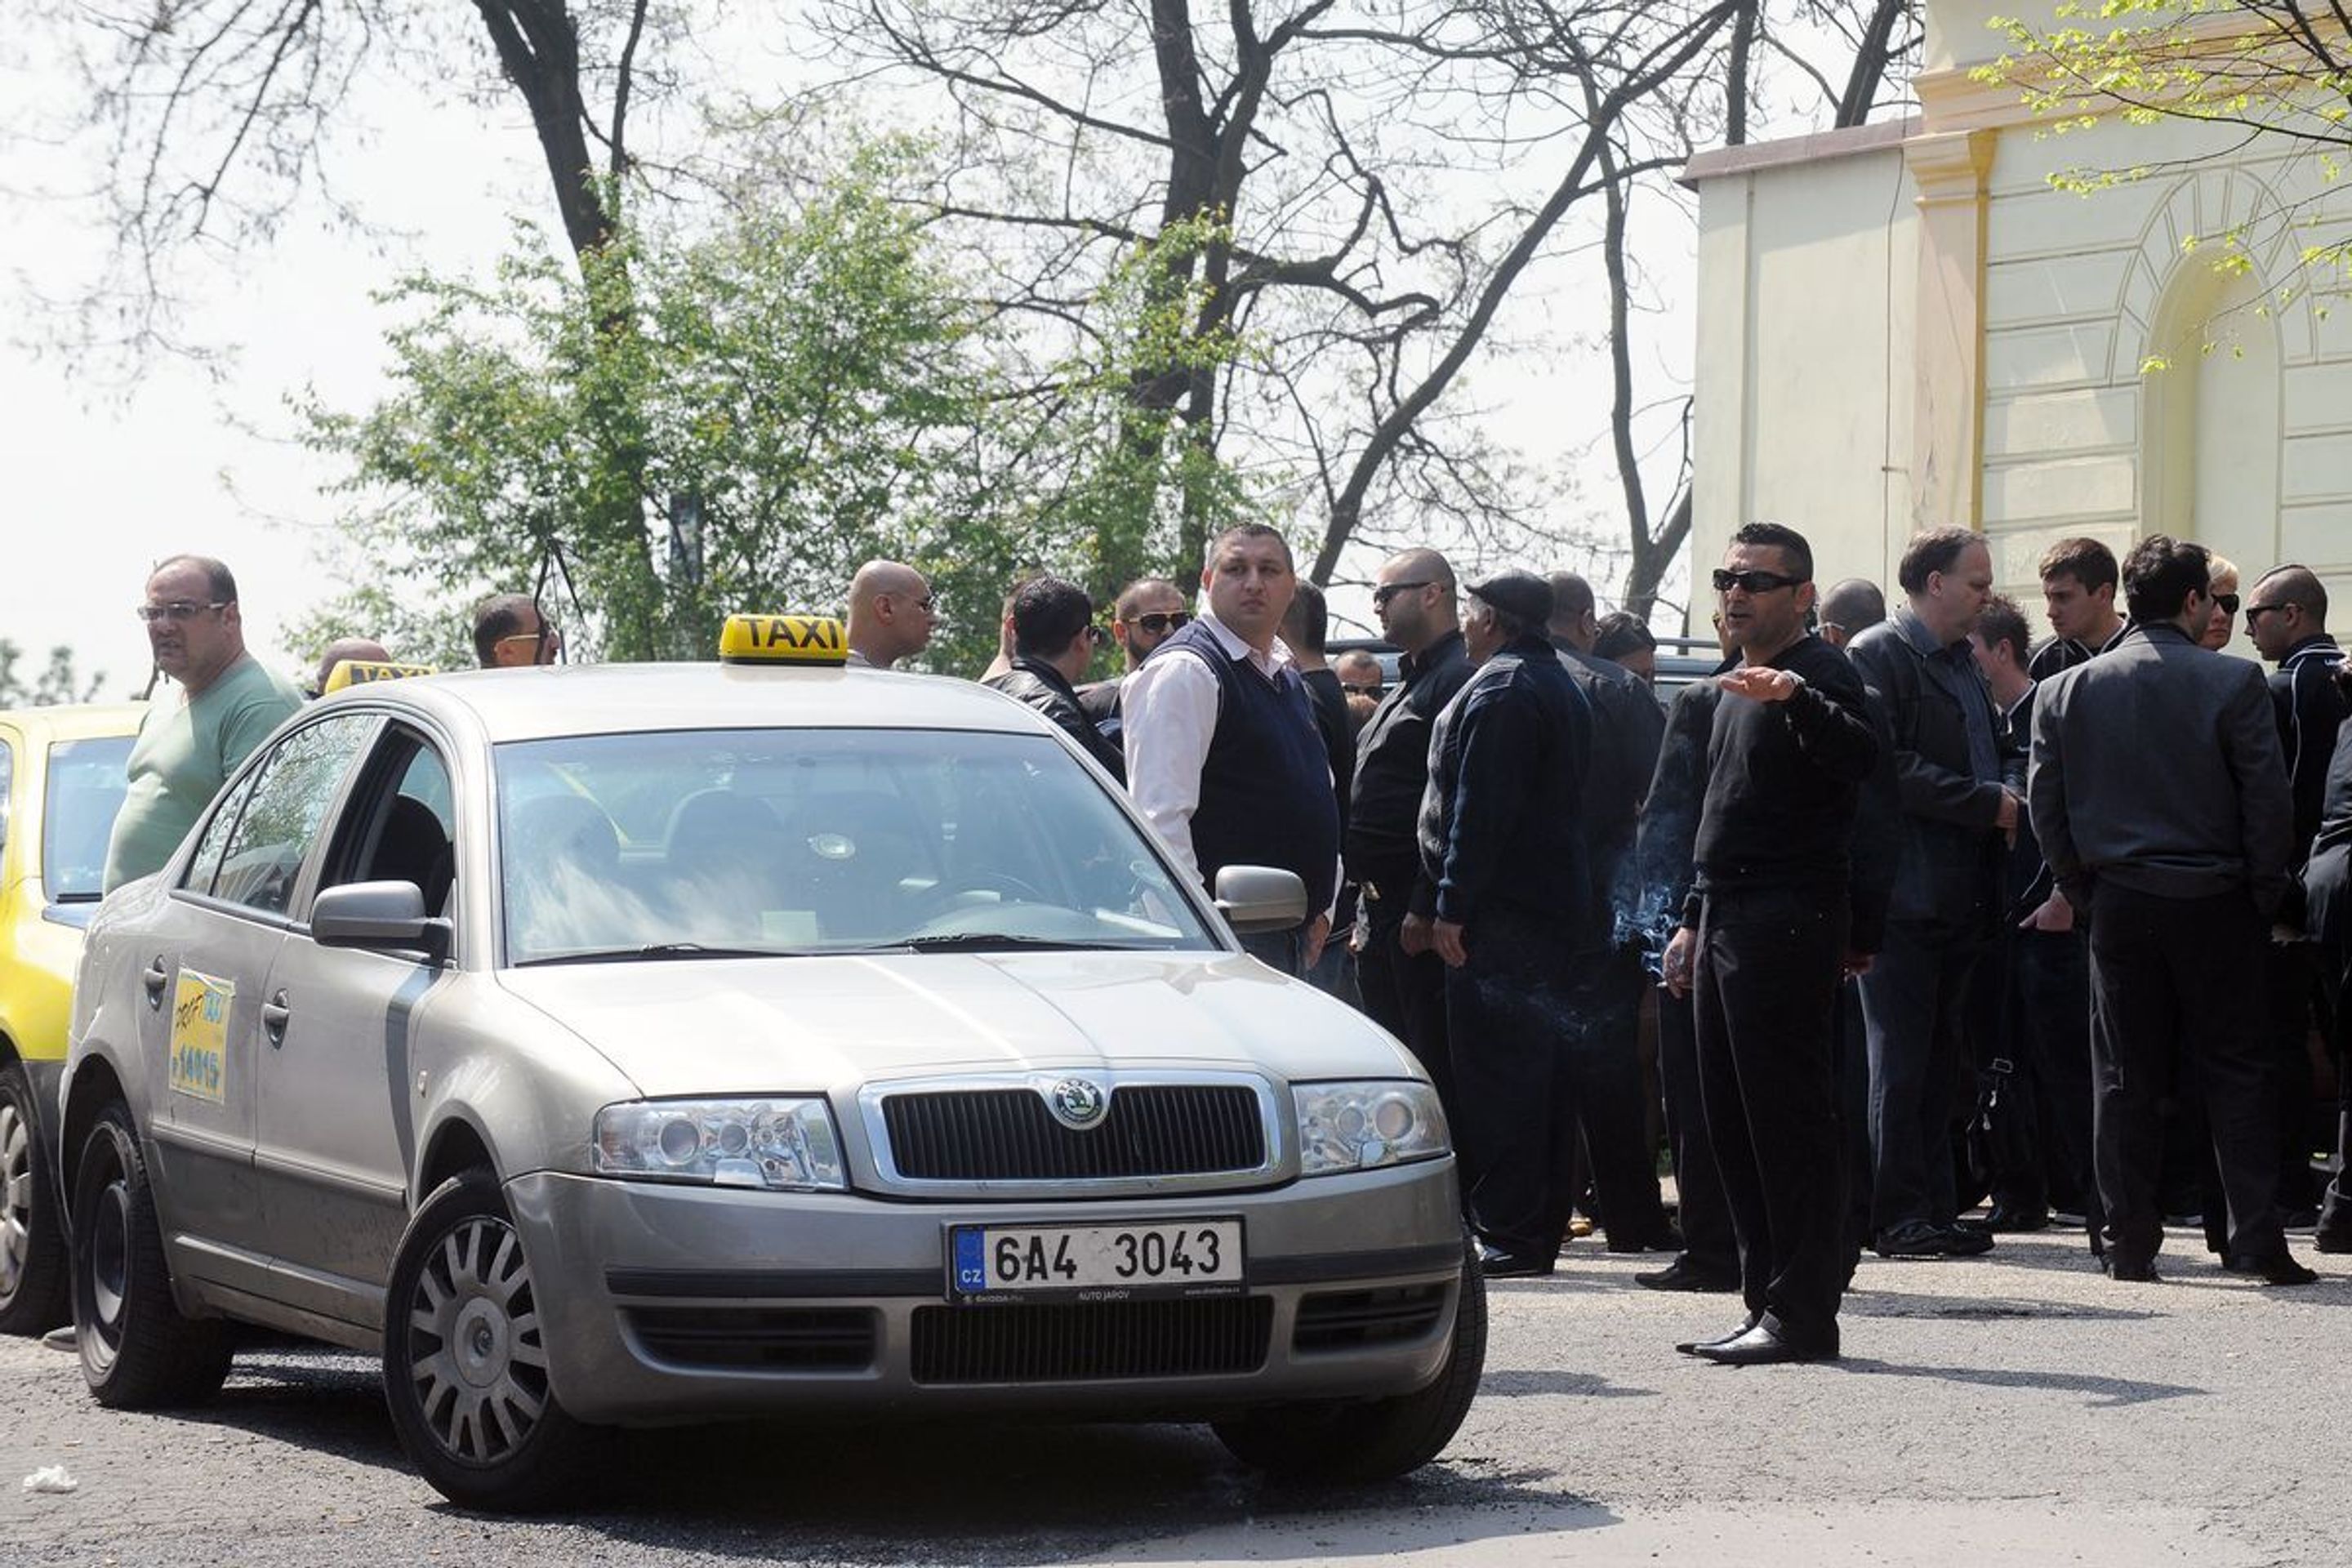 Pohřeb zavražděného taxikáře - Libeň - 2 - GALERIE: Pohřeb zavražděného taxikáře v Libni (15/16)